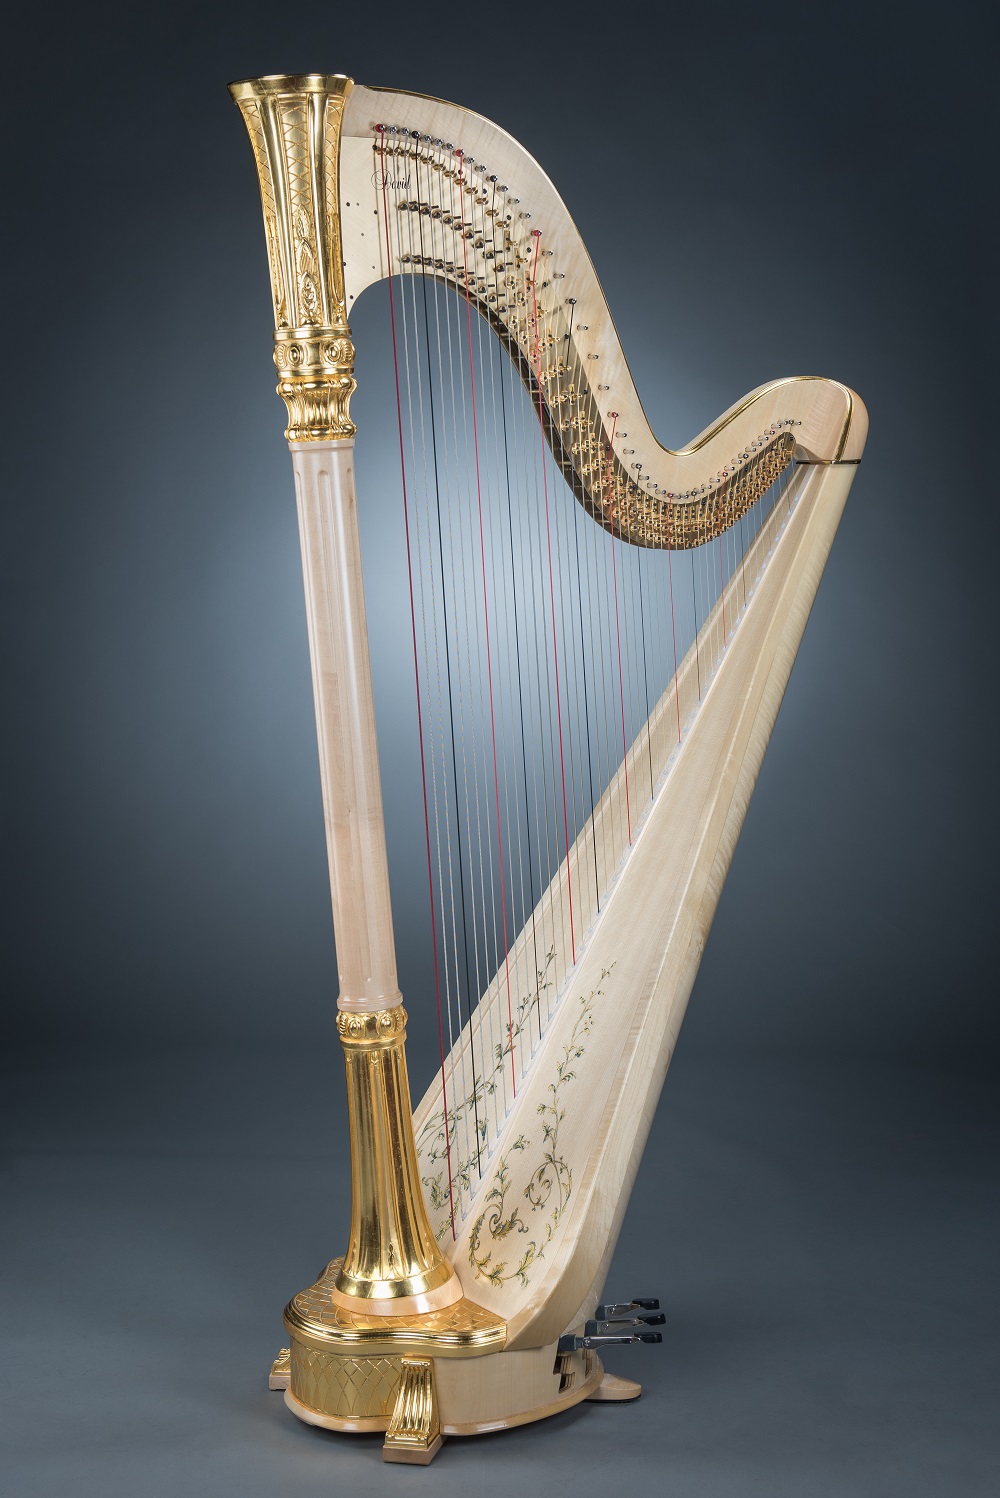 Notre harpe dorée pour le WHC de Hong-Kong – Manufacture de harpes David